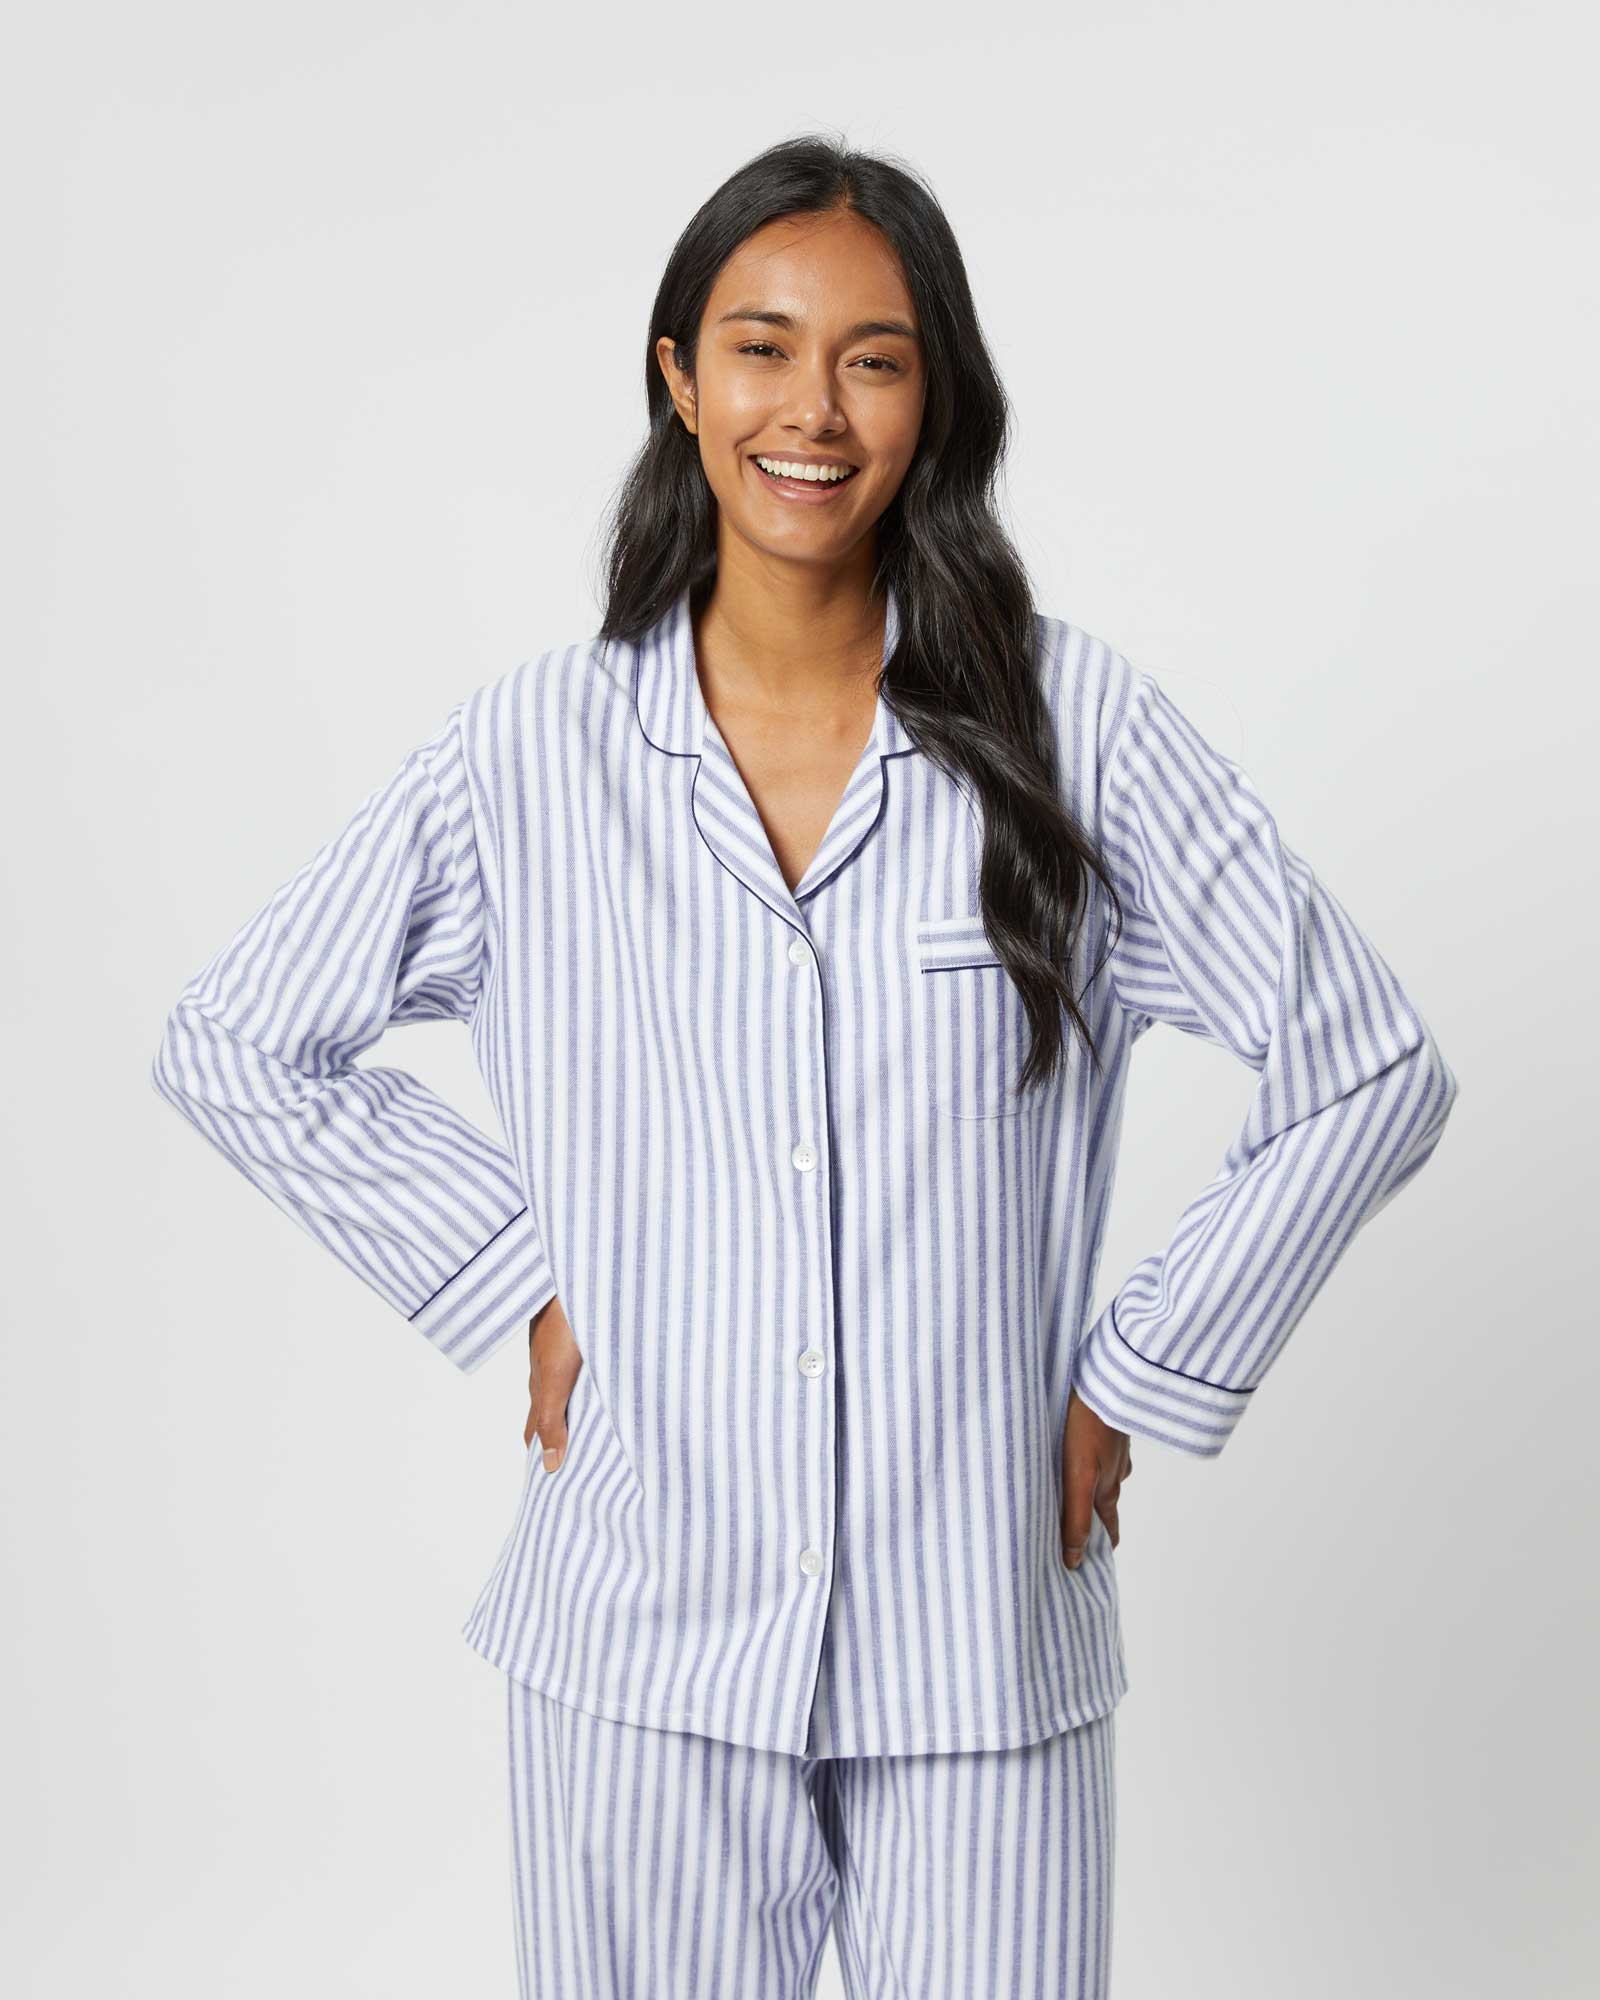 100% Cotton Built In Bra Wireless Striped Patio Dress Night Lounge  Sleepwear